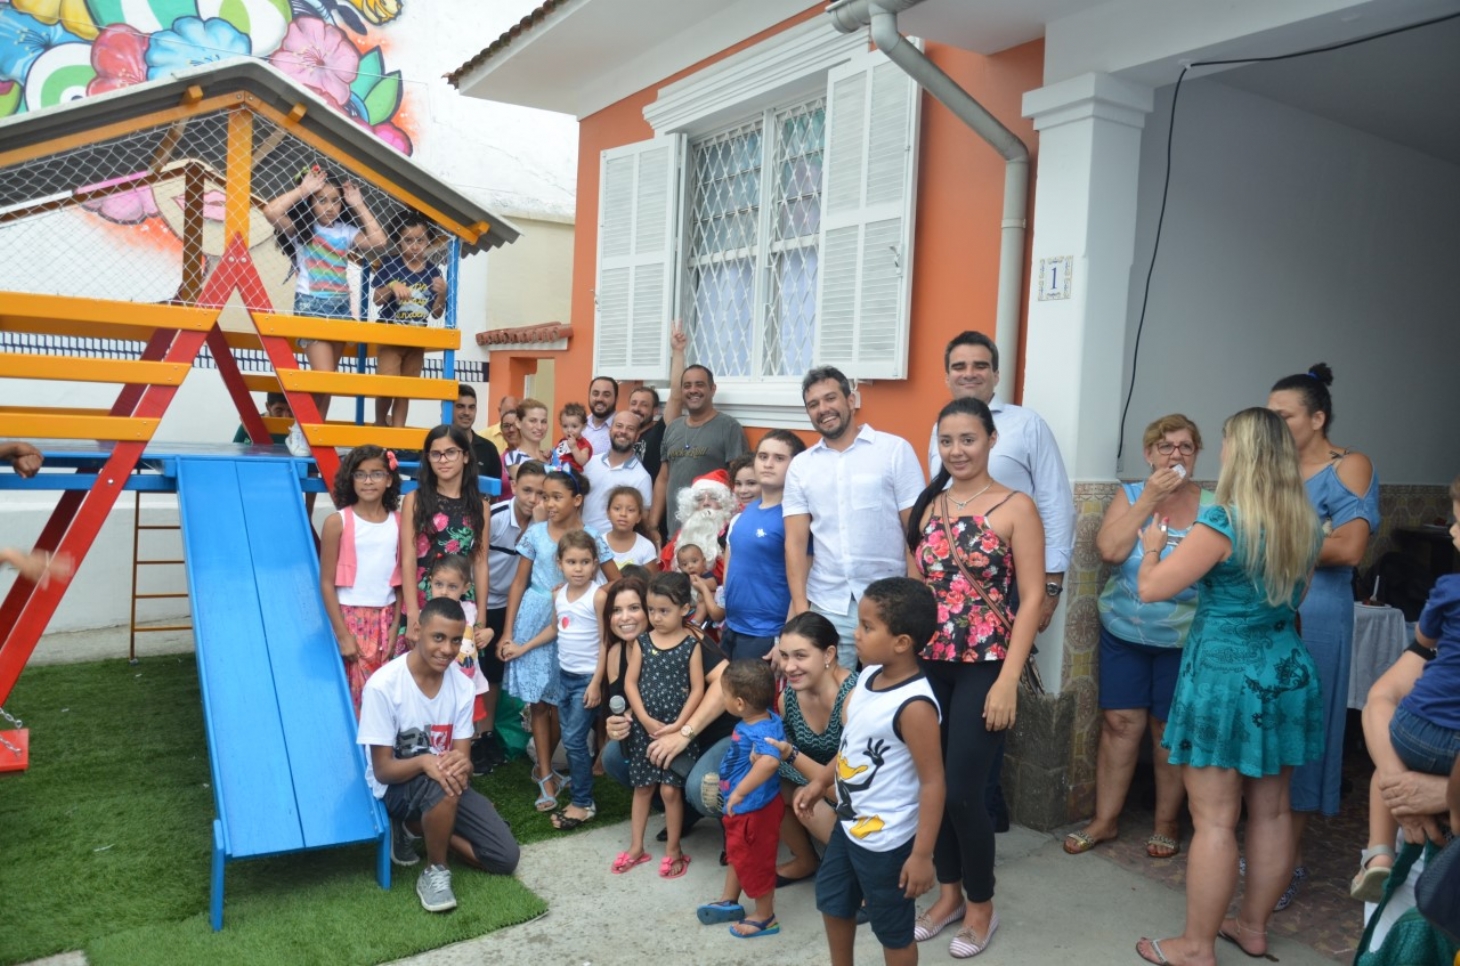 Abraccii promove campanha para o Dia das Crianças | Jornal da Orla